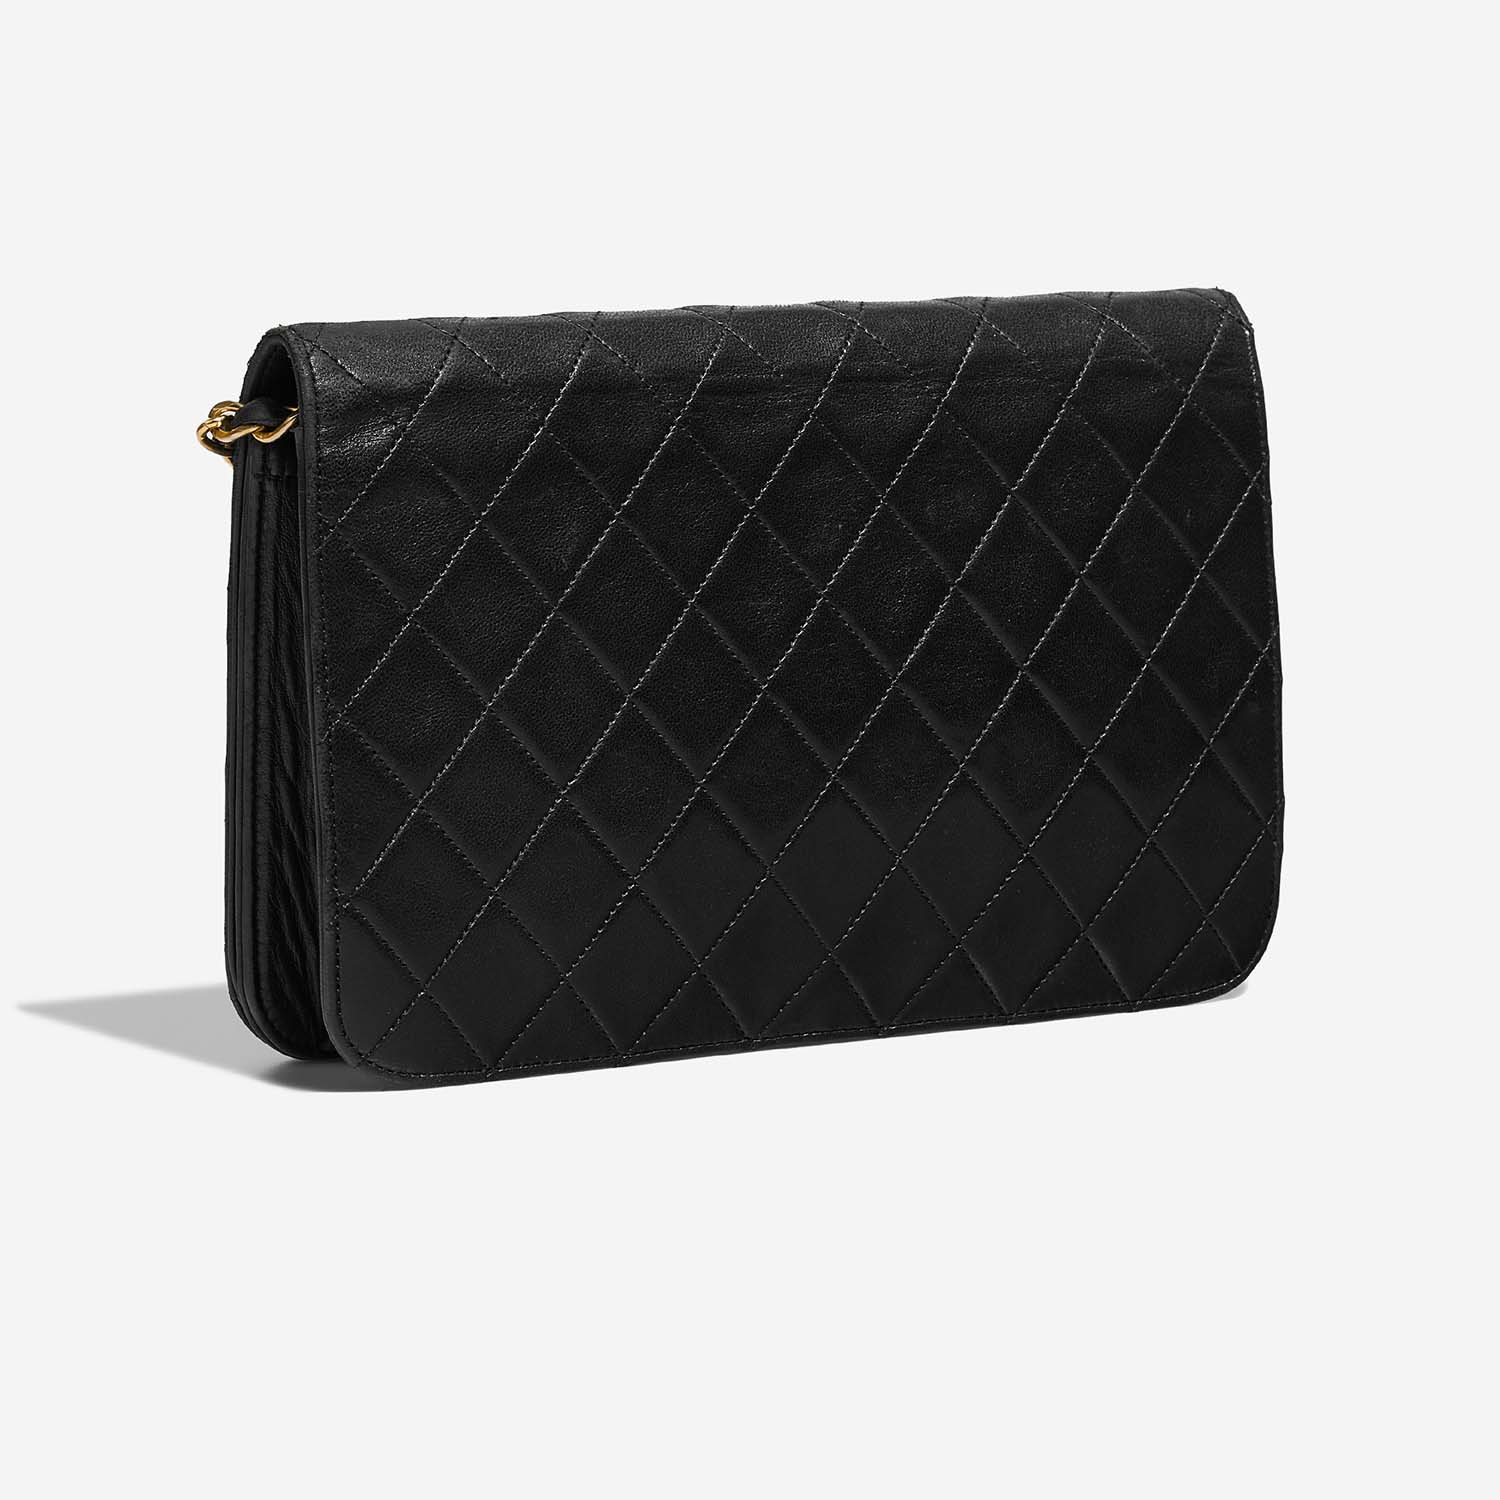 Chanel Timeless Medium Schwarz 7SB S | Verkaufen Sie Ihre Designer-Tasche auf Saclab.com